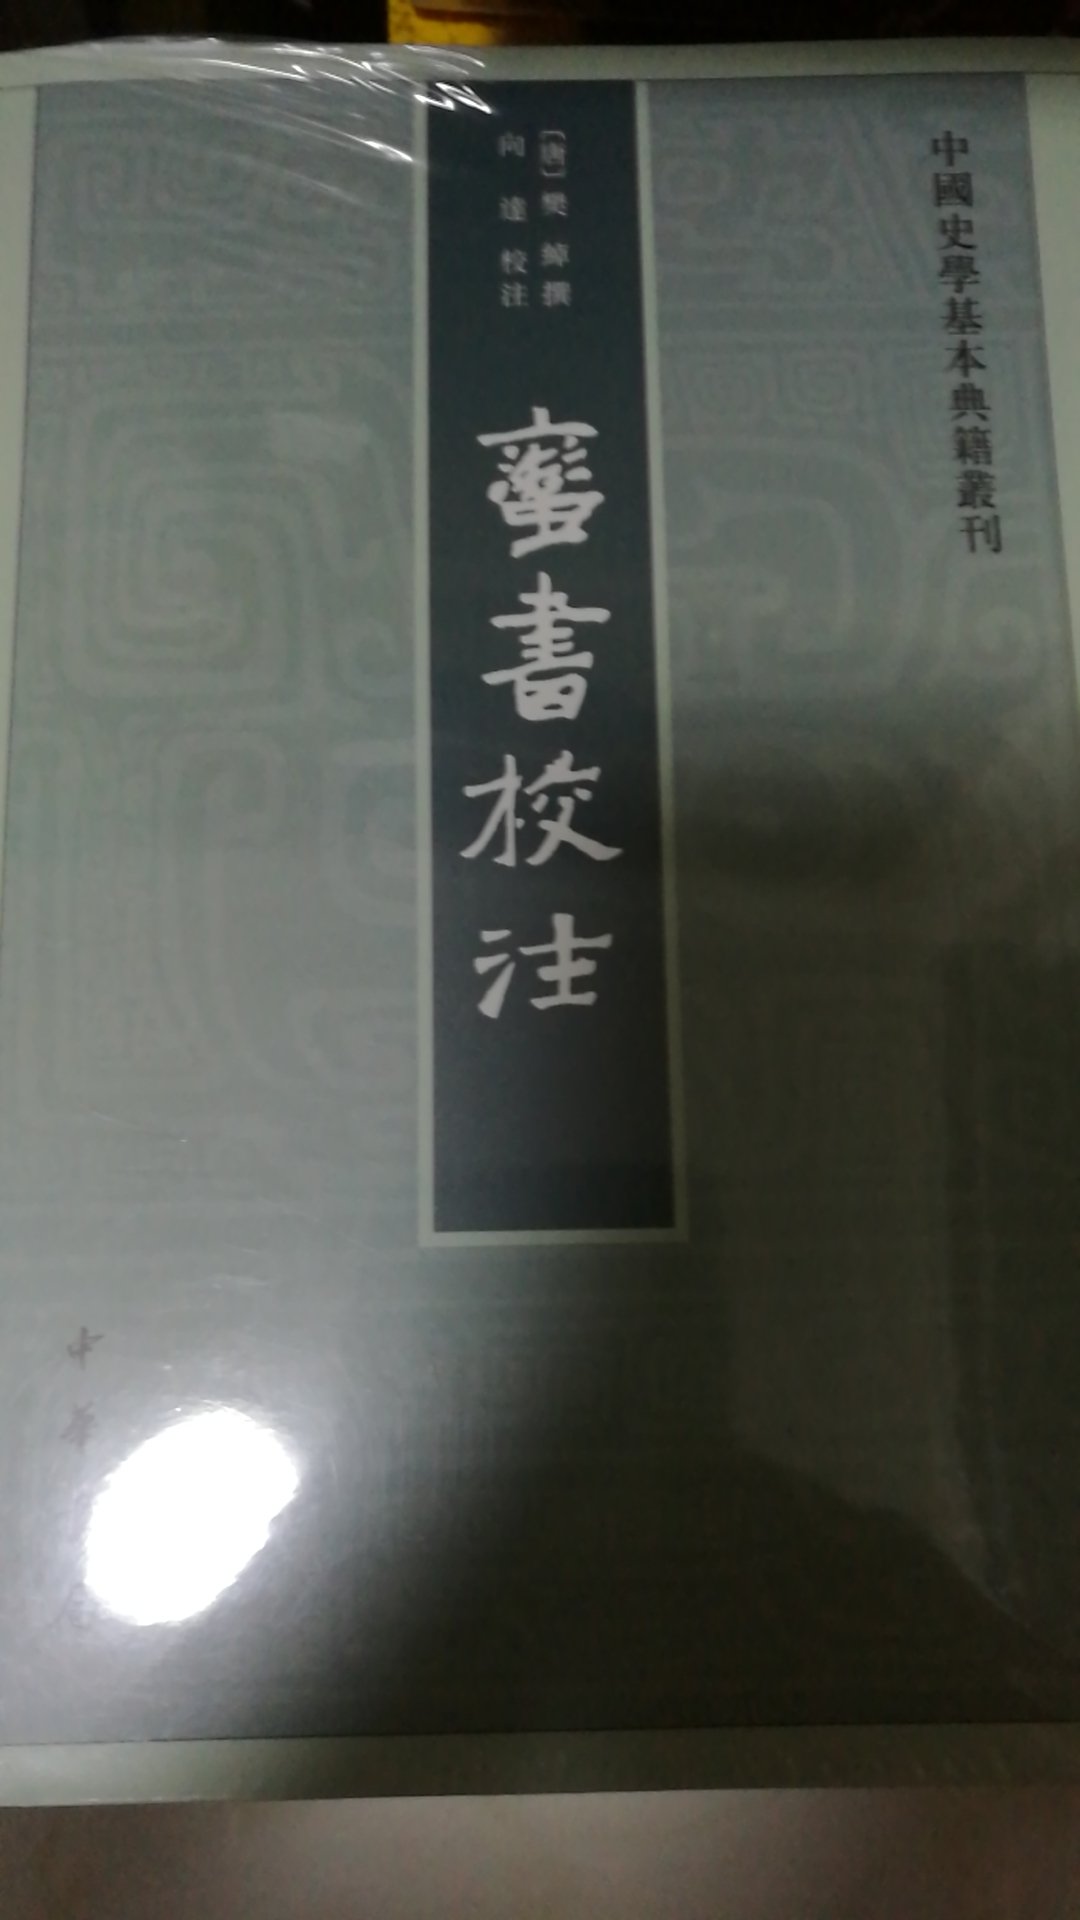 中国史学基本典籍丛刊的一种，每出必买。中华书局的好书！